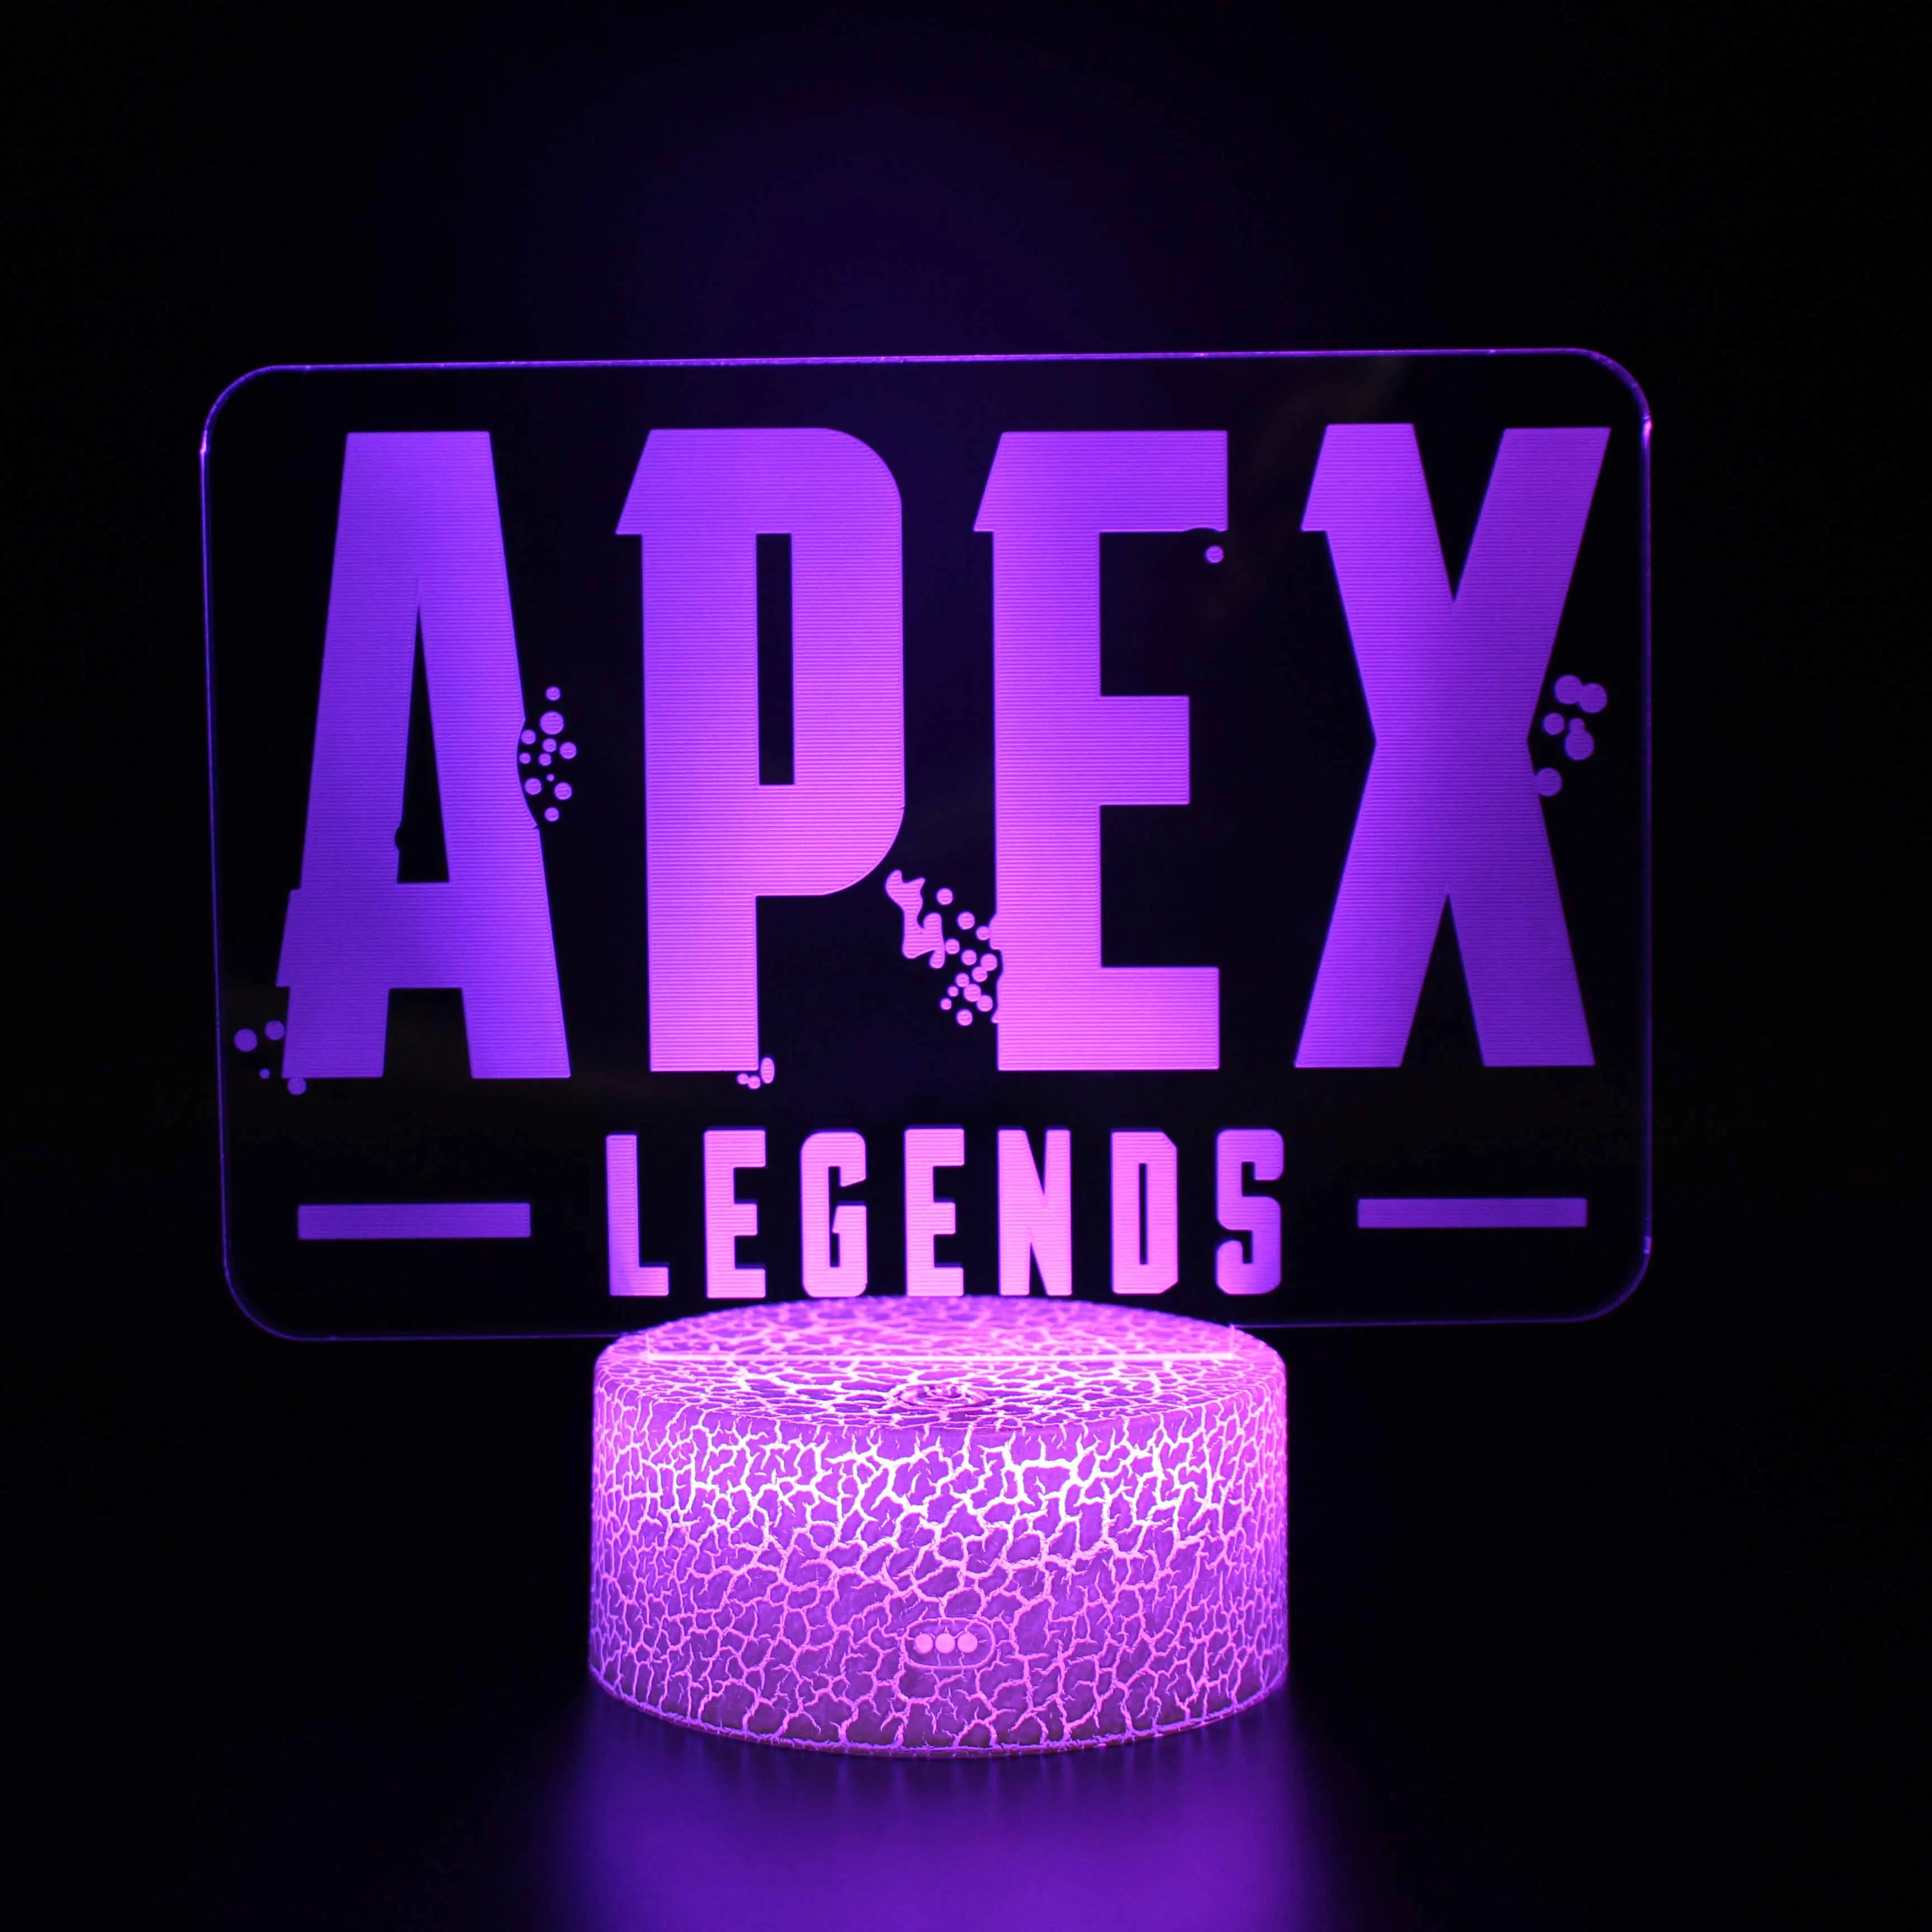 

Ночник Apex Legends, светодиодная иллюзионная лампа, персонажи видеоигр, акриловые доски для настольных игровых ламп, 3D 16 цветов, удаленный перек...